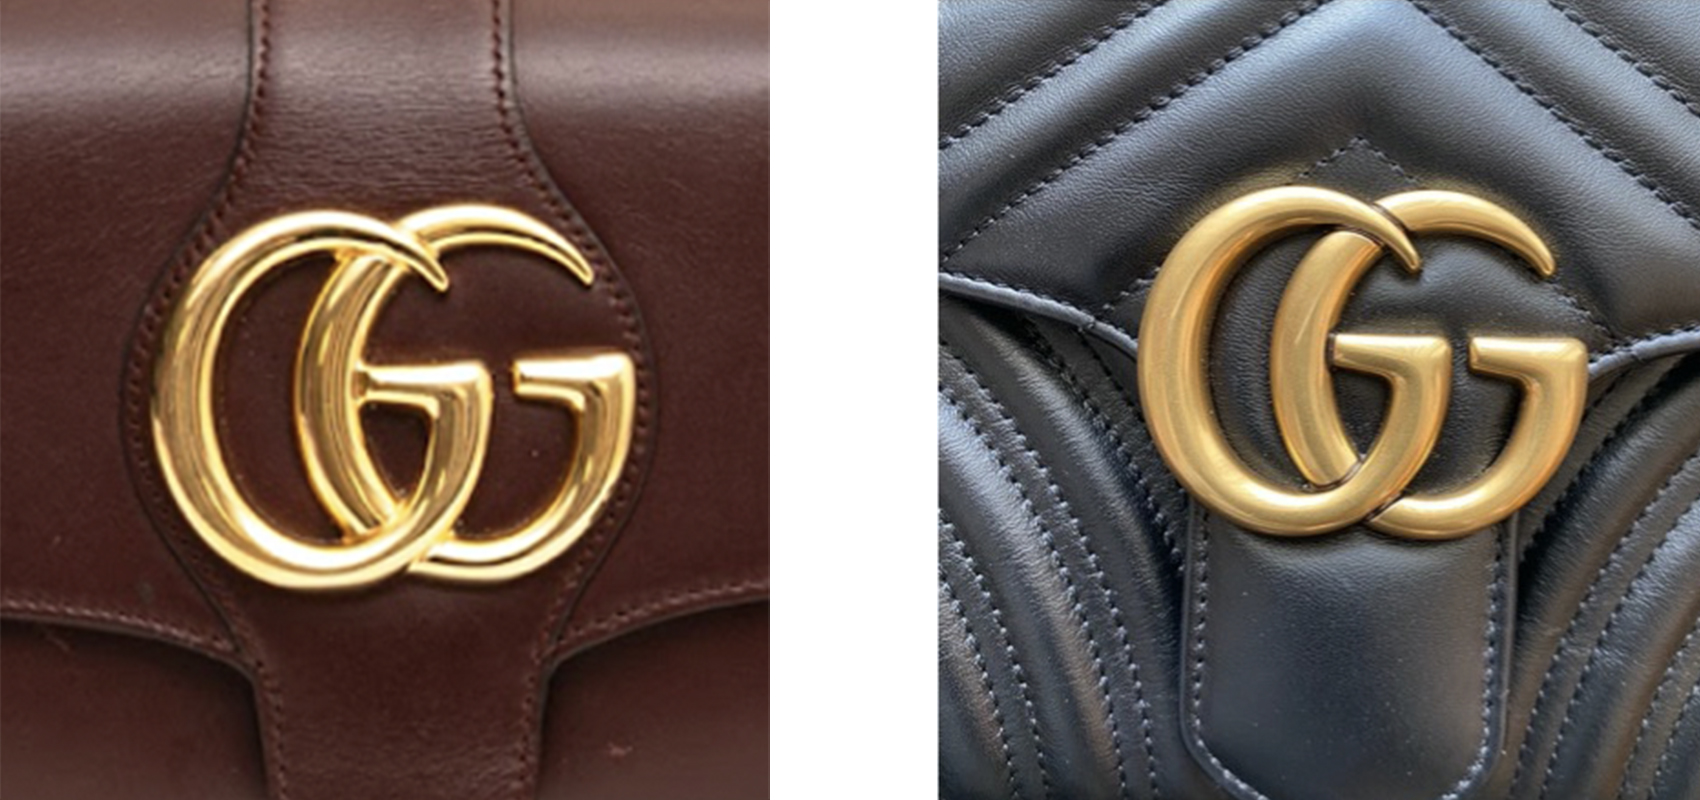 How To Spot Real Vs Fake Gucci Messenger Bag – LegitGrails